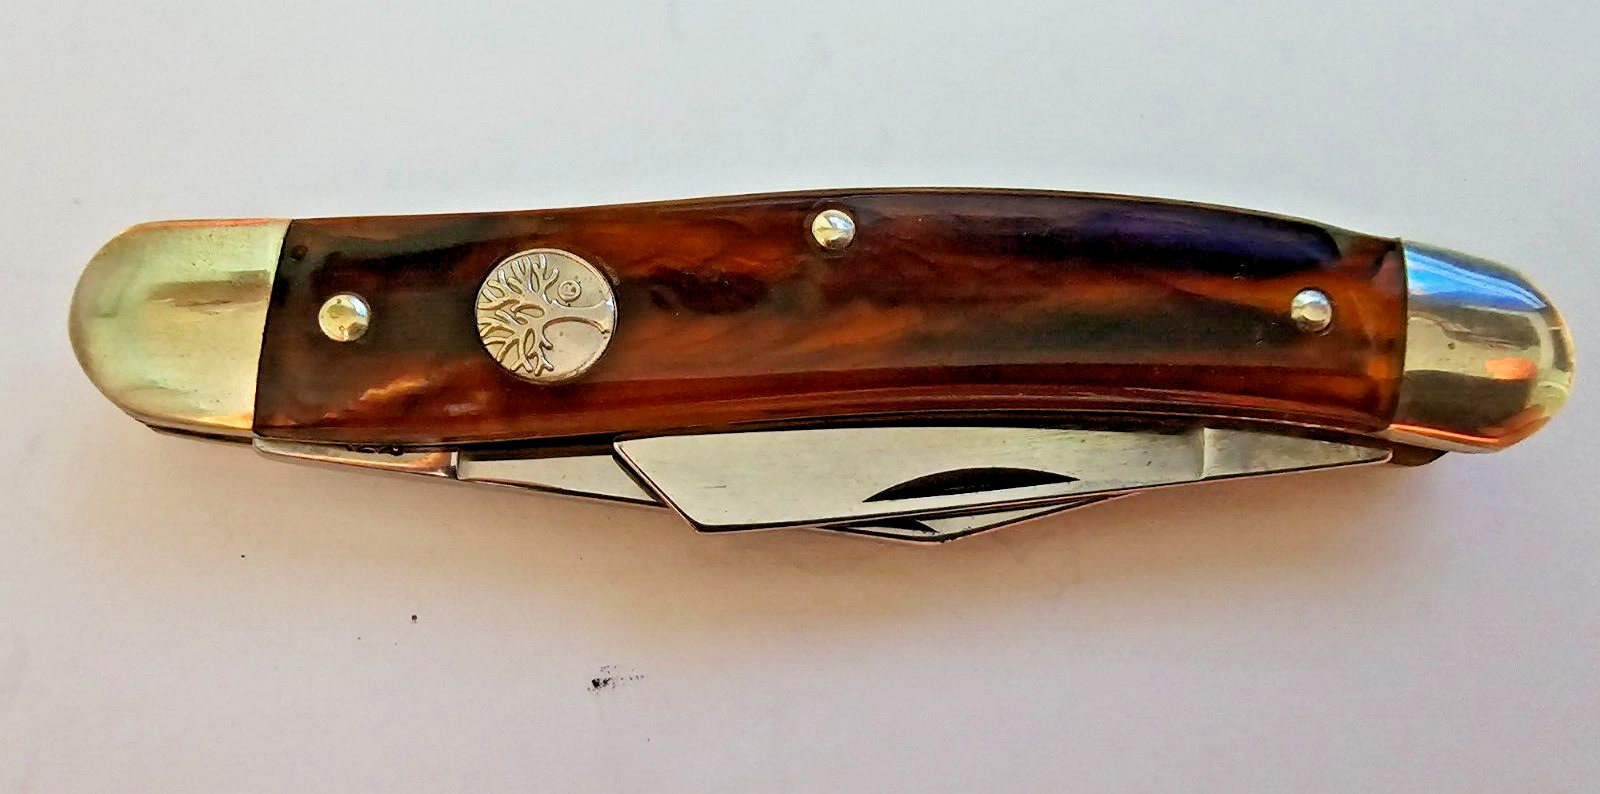 3 Blade Boker Tree Brand Solingen Germany Pocket Knife Vintage